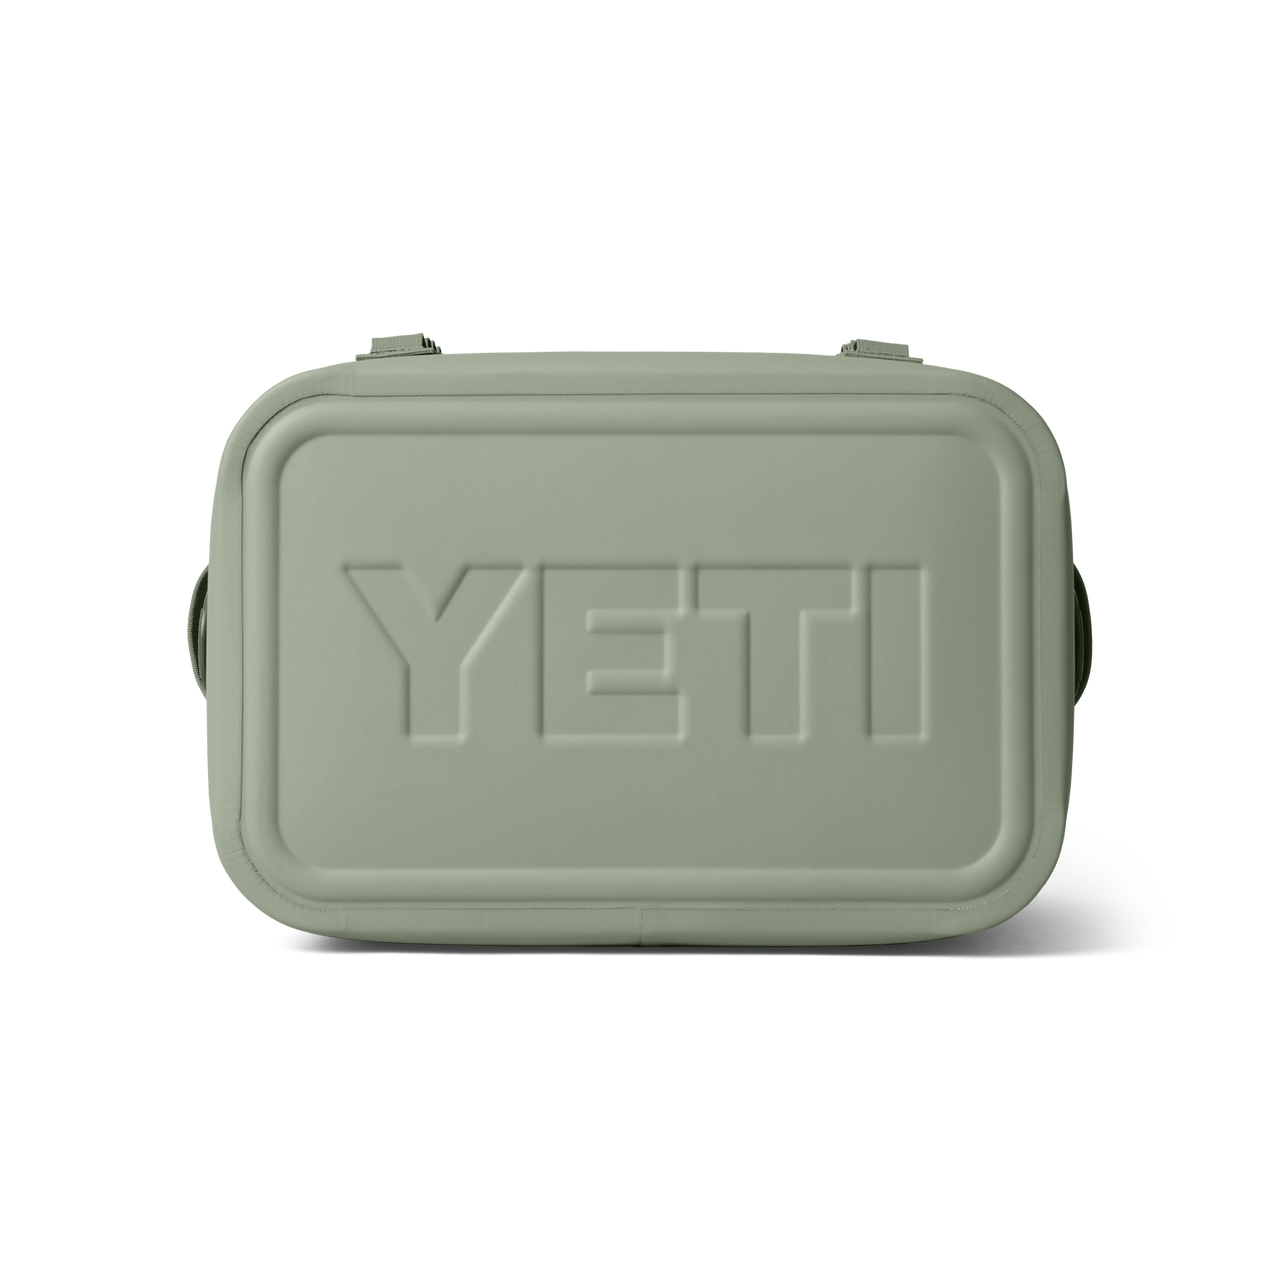 Yeti Hopper Flip 8 Soft Cooler - Camp Green